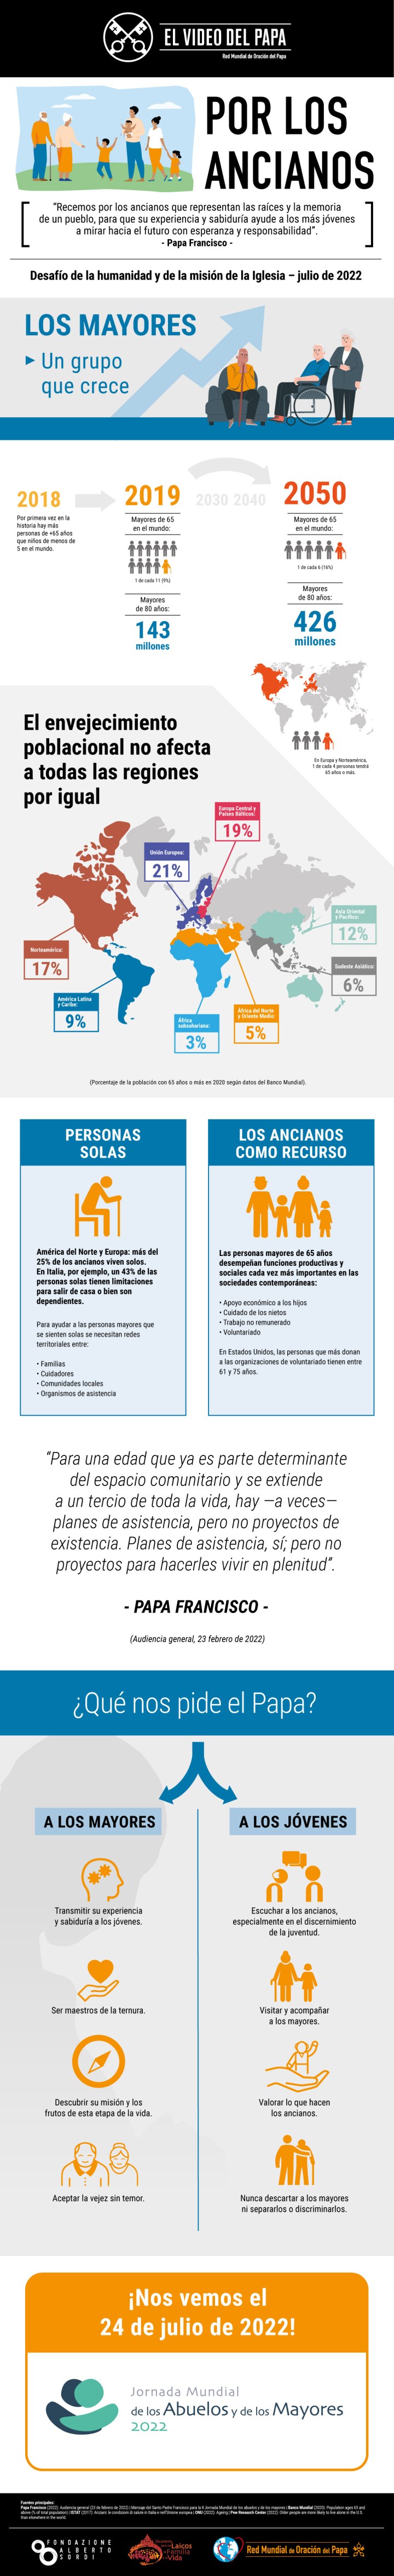 Infographic-TPV-7-2022-ES-Por-los-ancianos.jpg